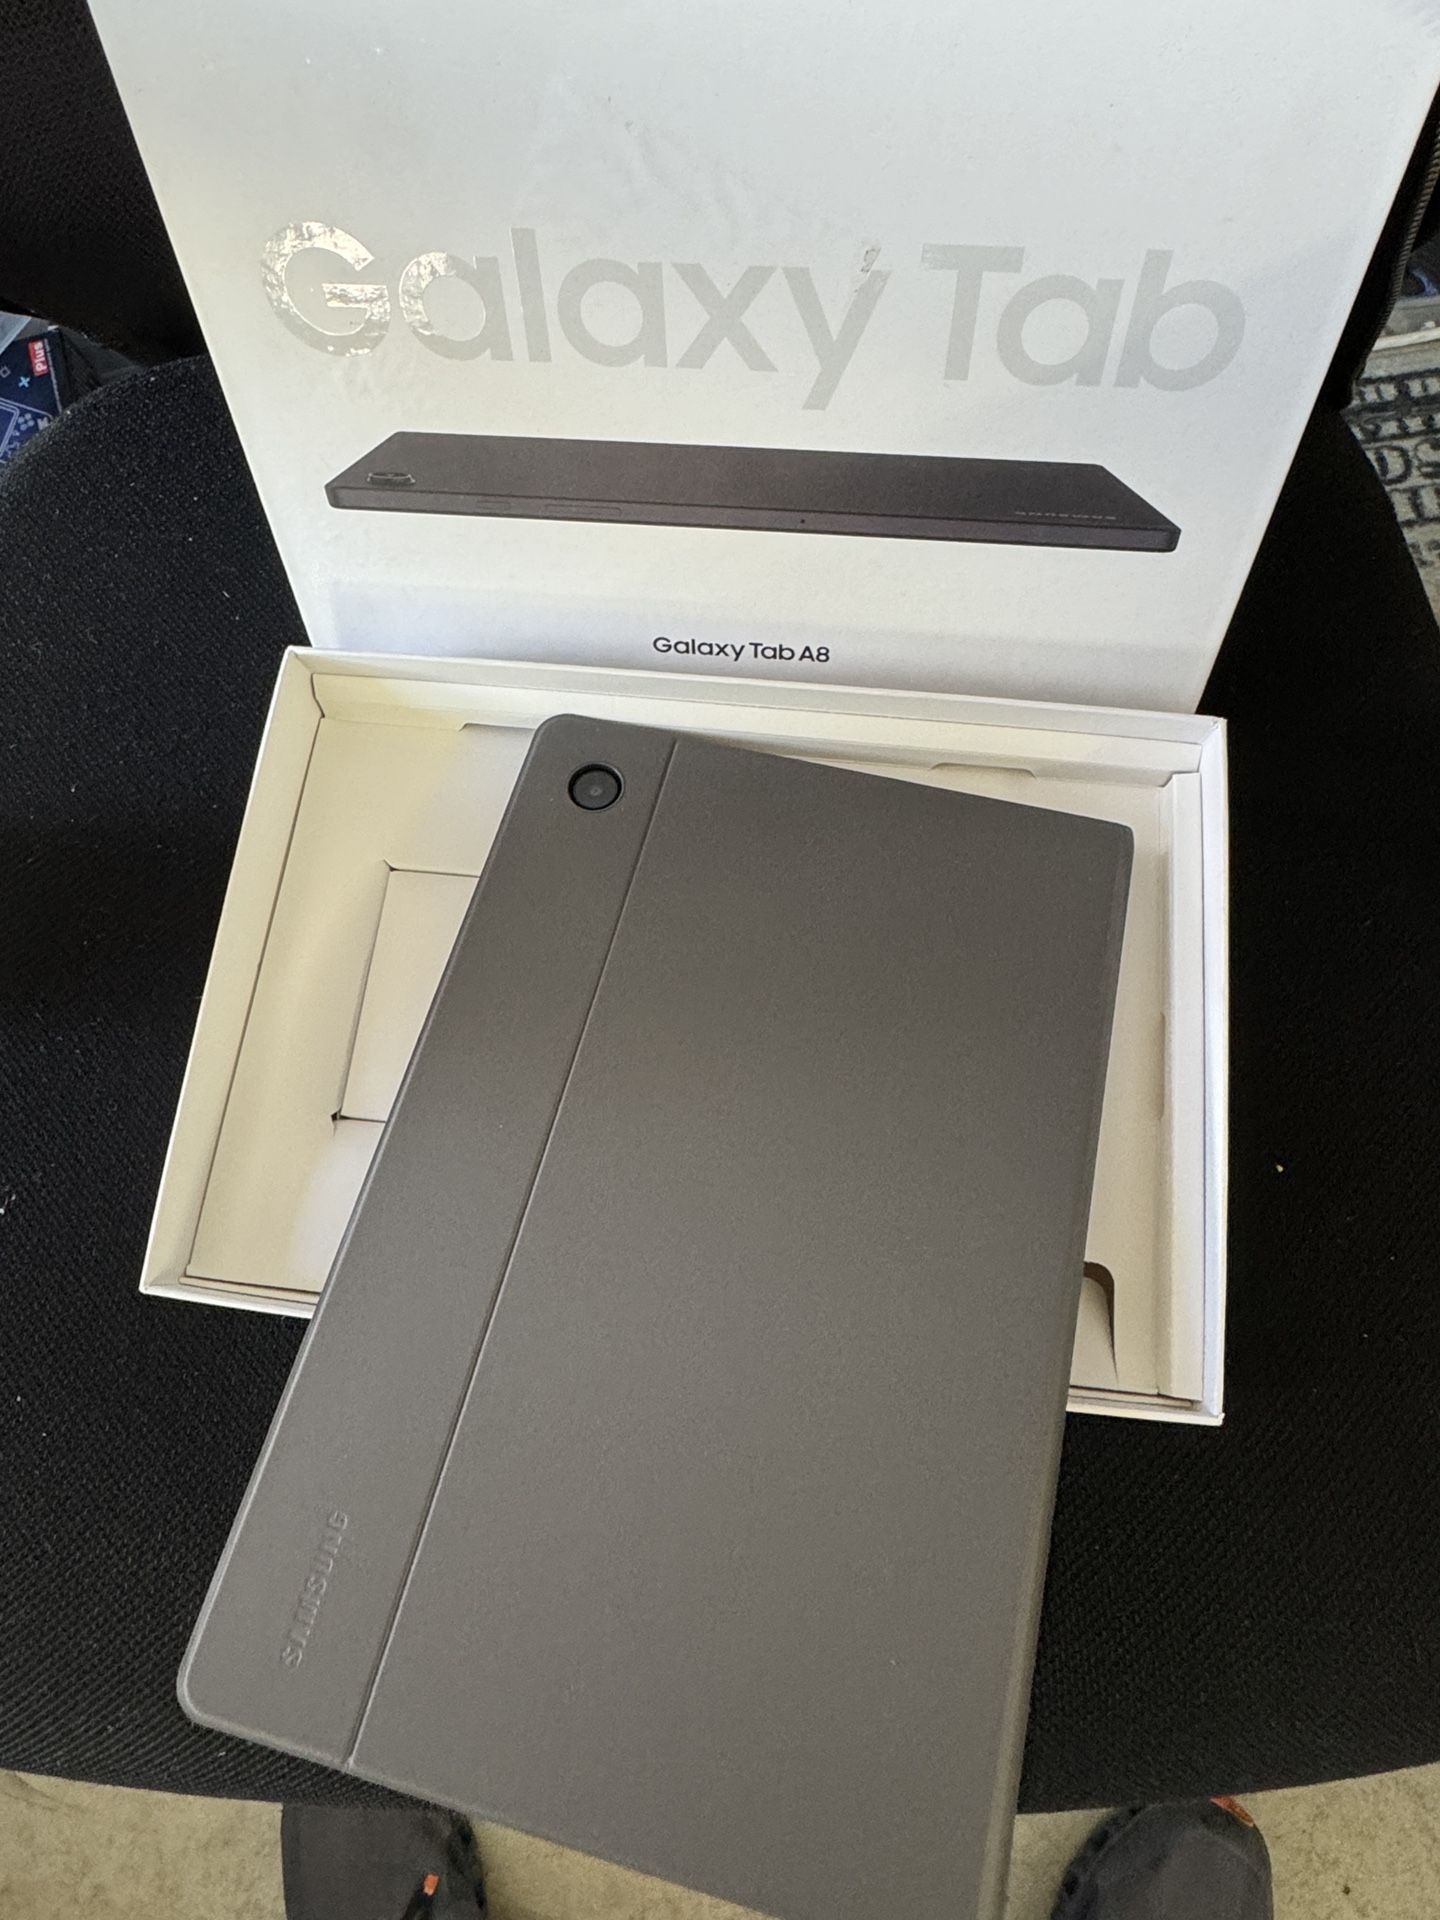 Samsung Galaxy Tab A8 10.5" 64GB Gray Tablet 2022 Model